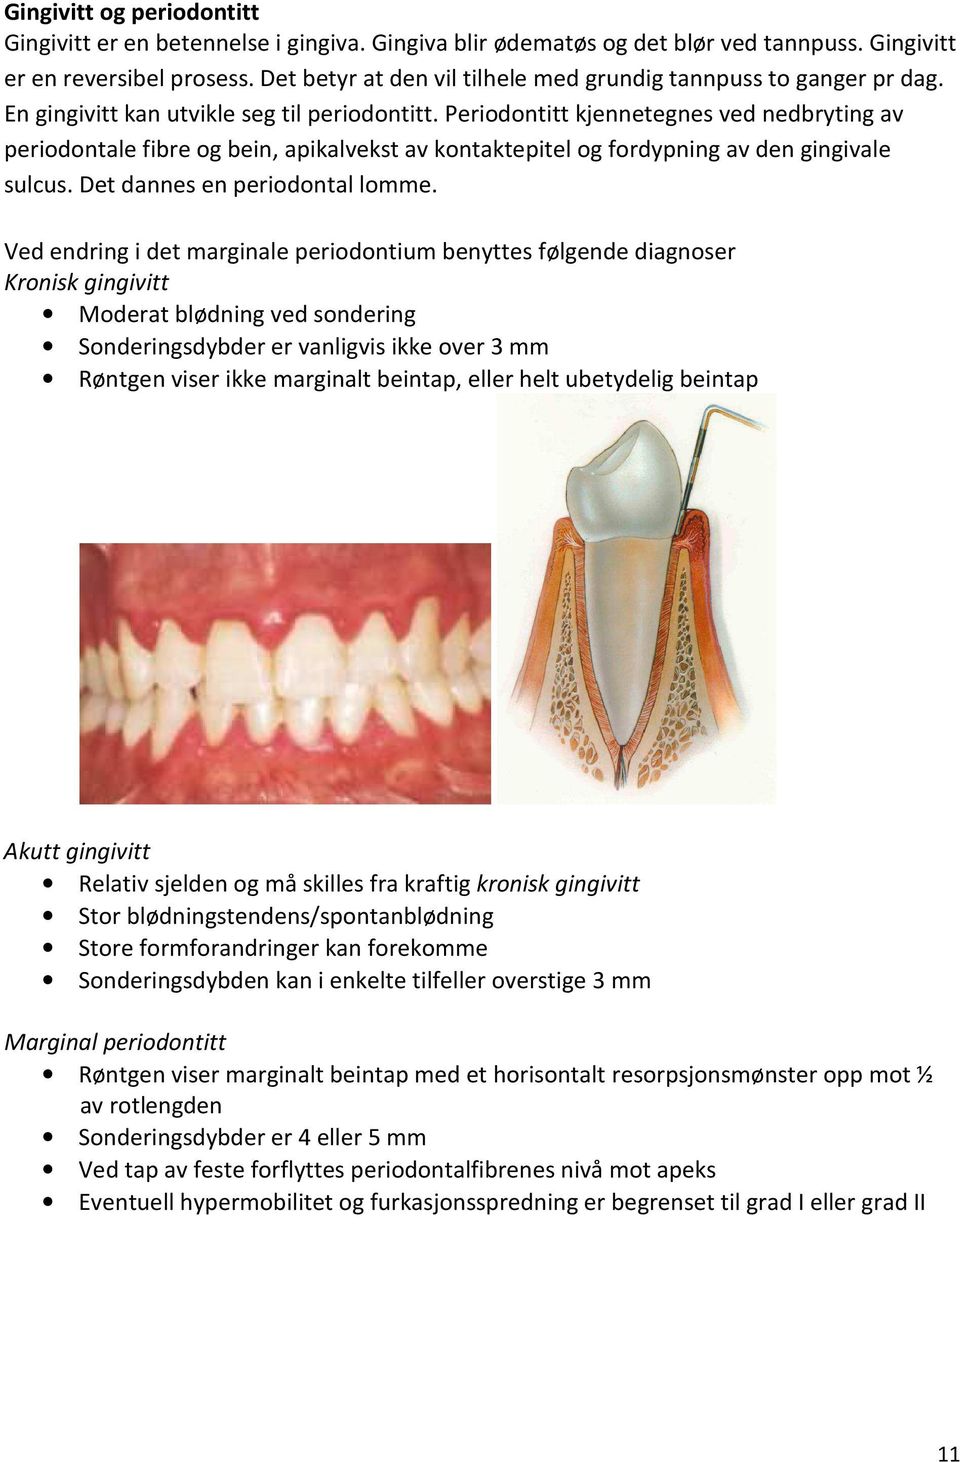 Periodontitt kjennetegnes ved nedbryting av periodontale fibre og bein, apikalvekst av kontaktepitel og fordypning av den gingivale sulcus. Det dannes en periodontal lomme.